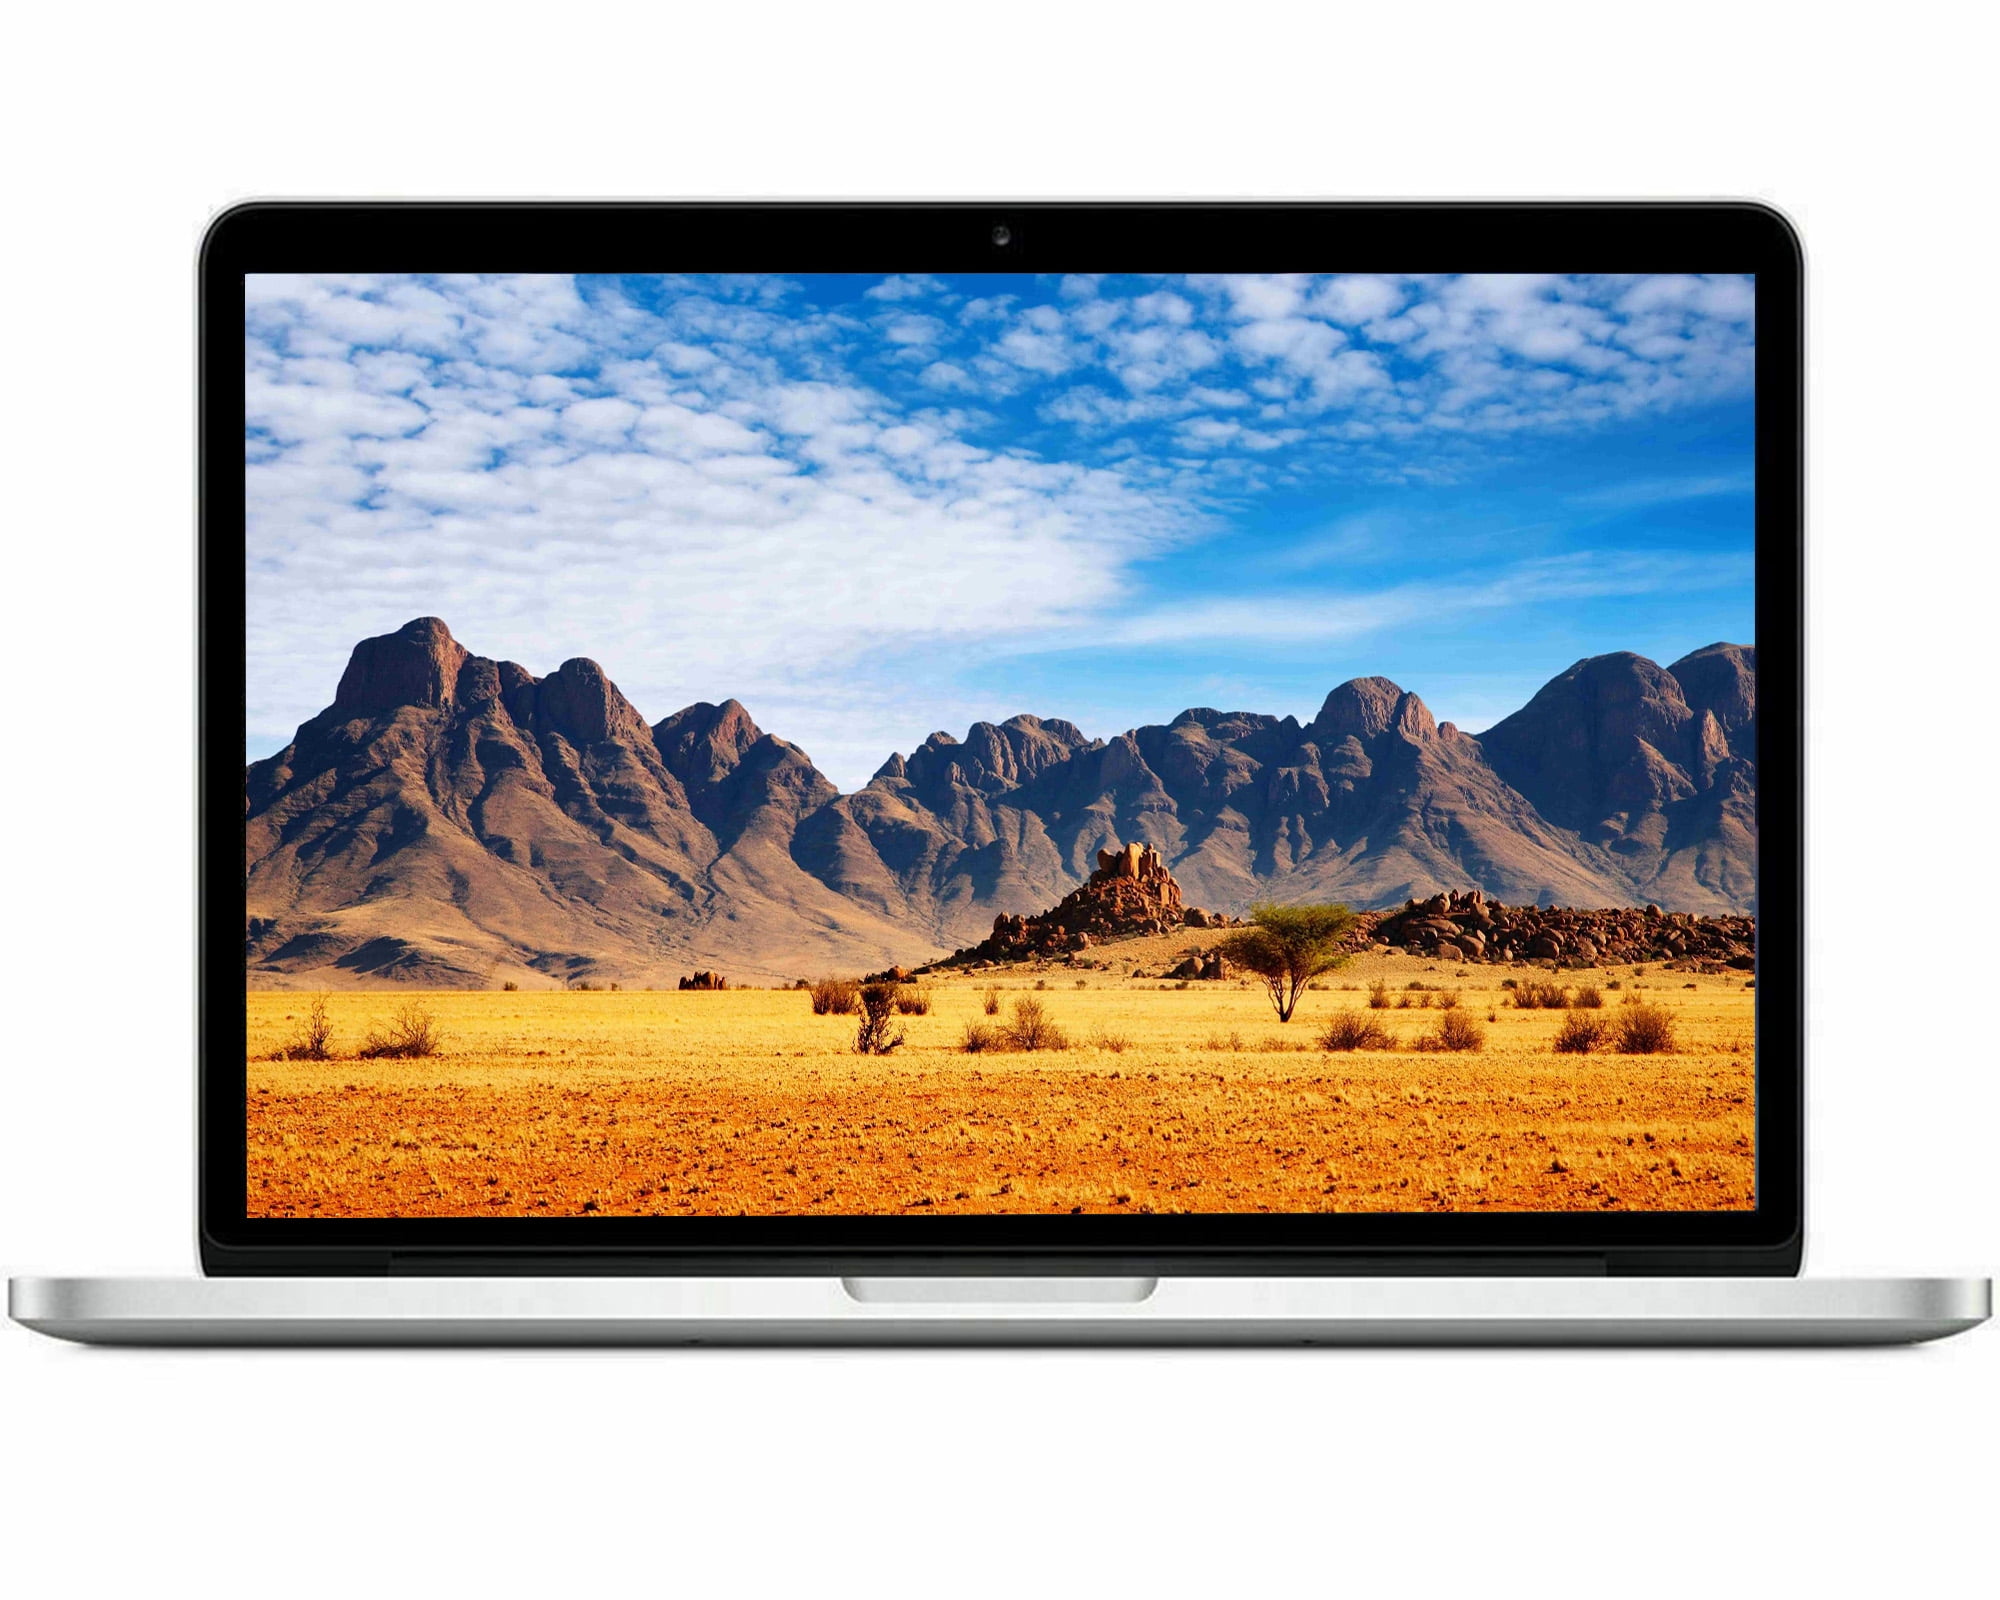 Aktuator Peck tage ned Used Apple MacBook Pro 13" MD313LL/A Intel i5-2435M 2.40GHz 4GB RAM 500GB  HDD OSX B Grade - Walmart.com